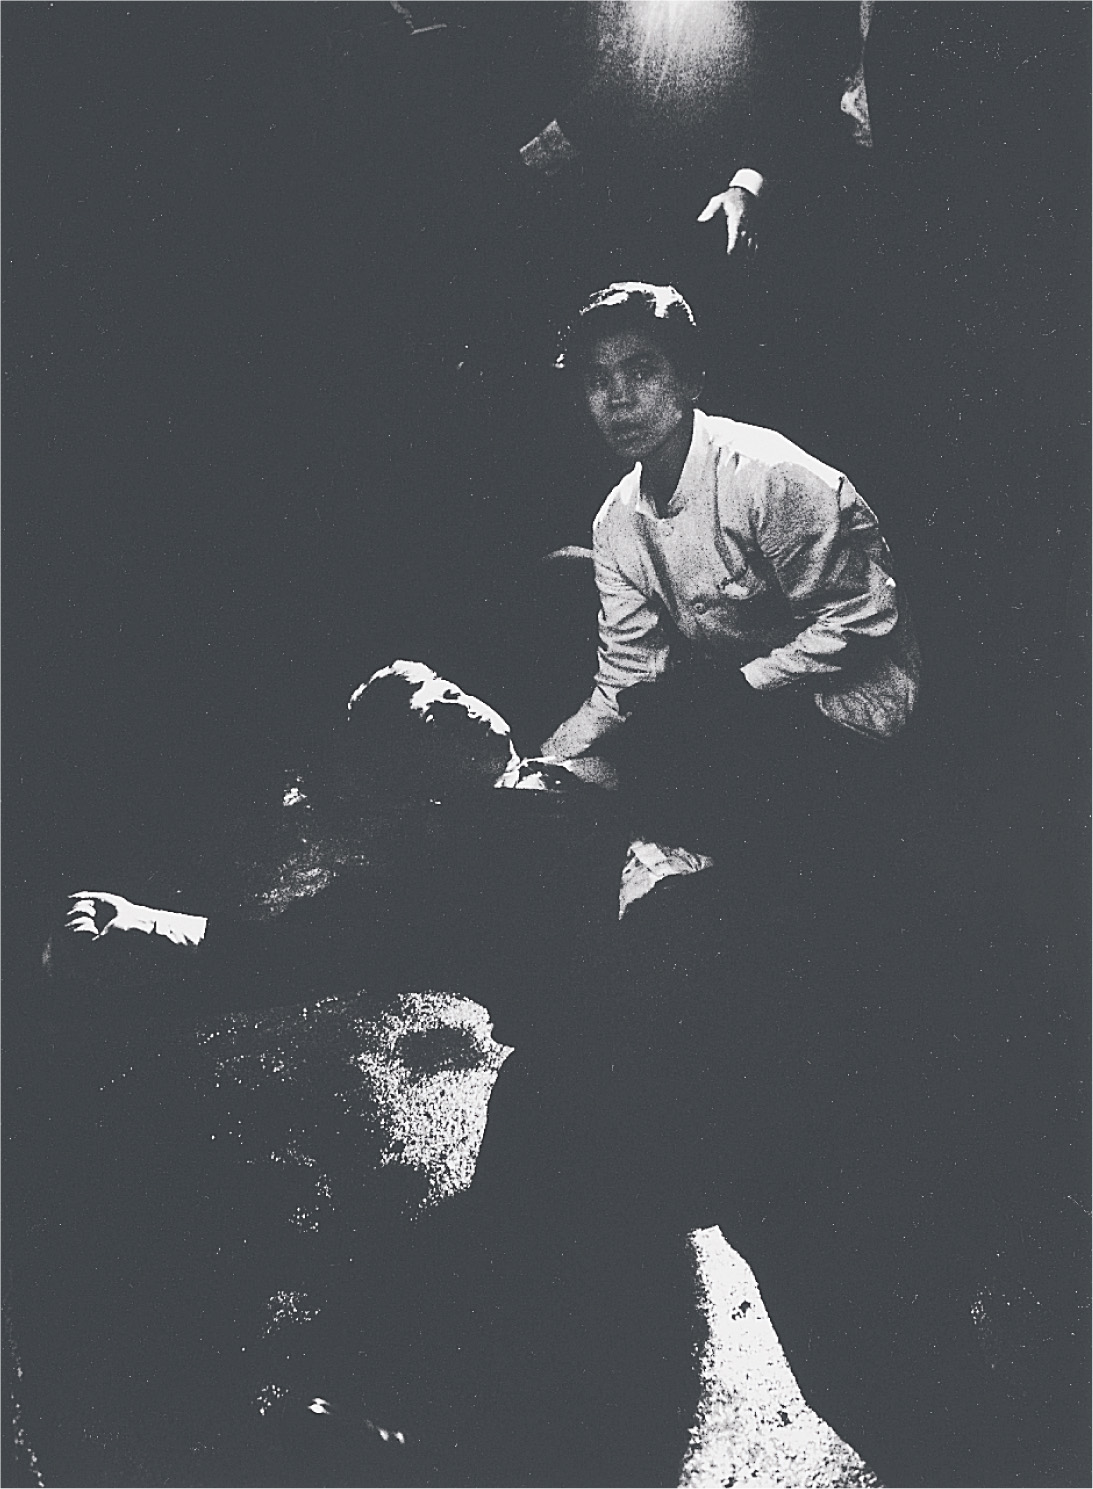 photo: a busboy kneels over the fallen Robert Kennedy.